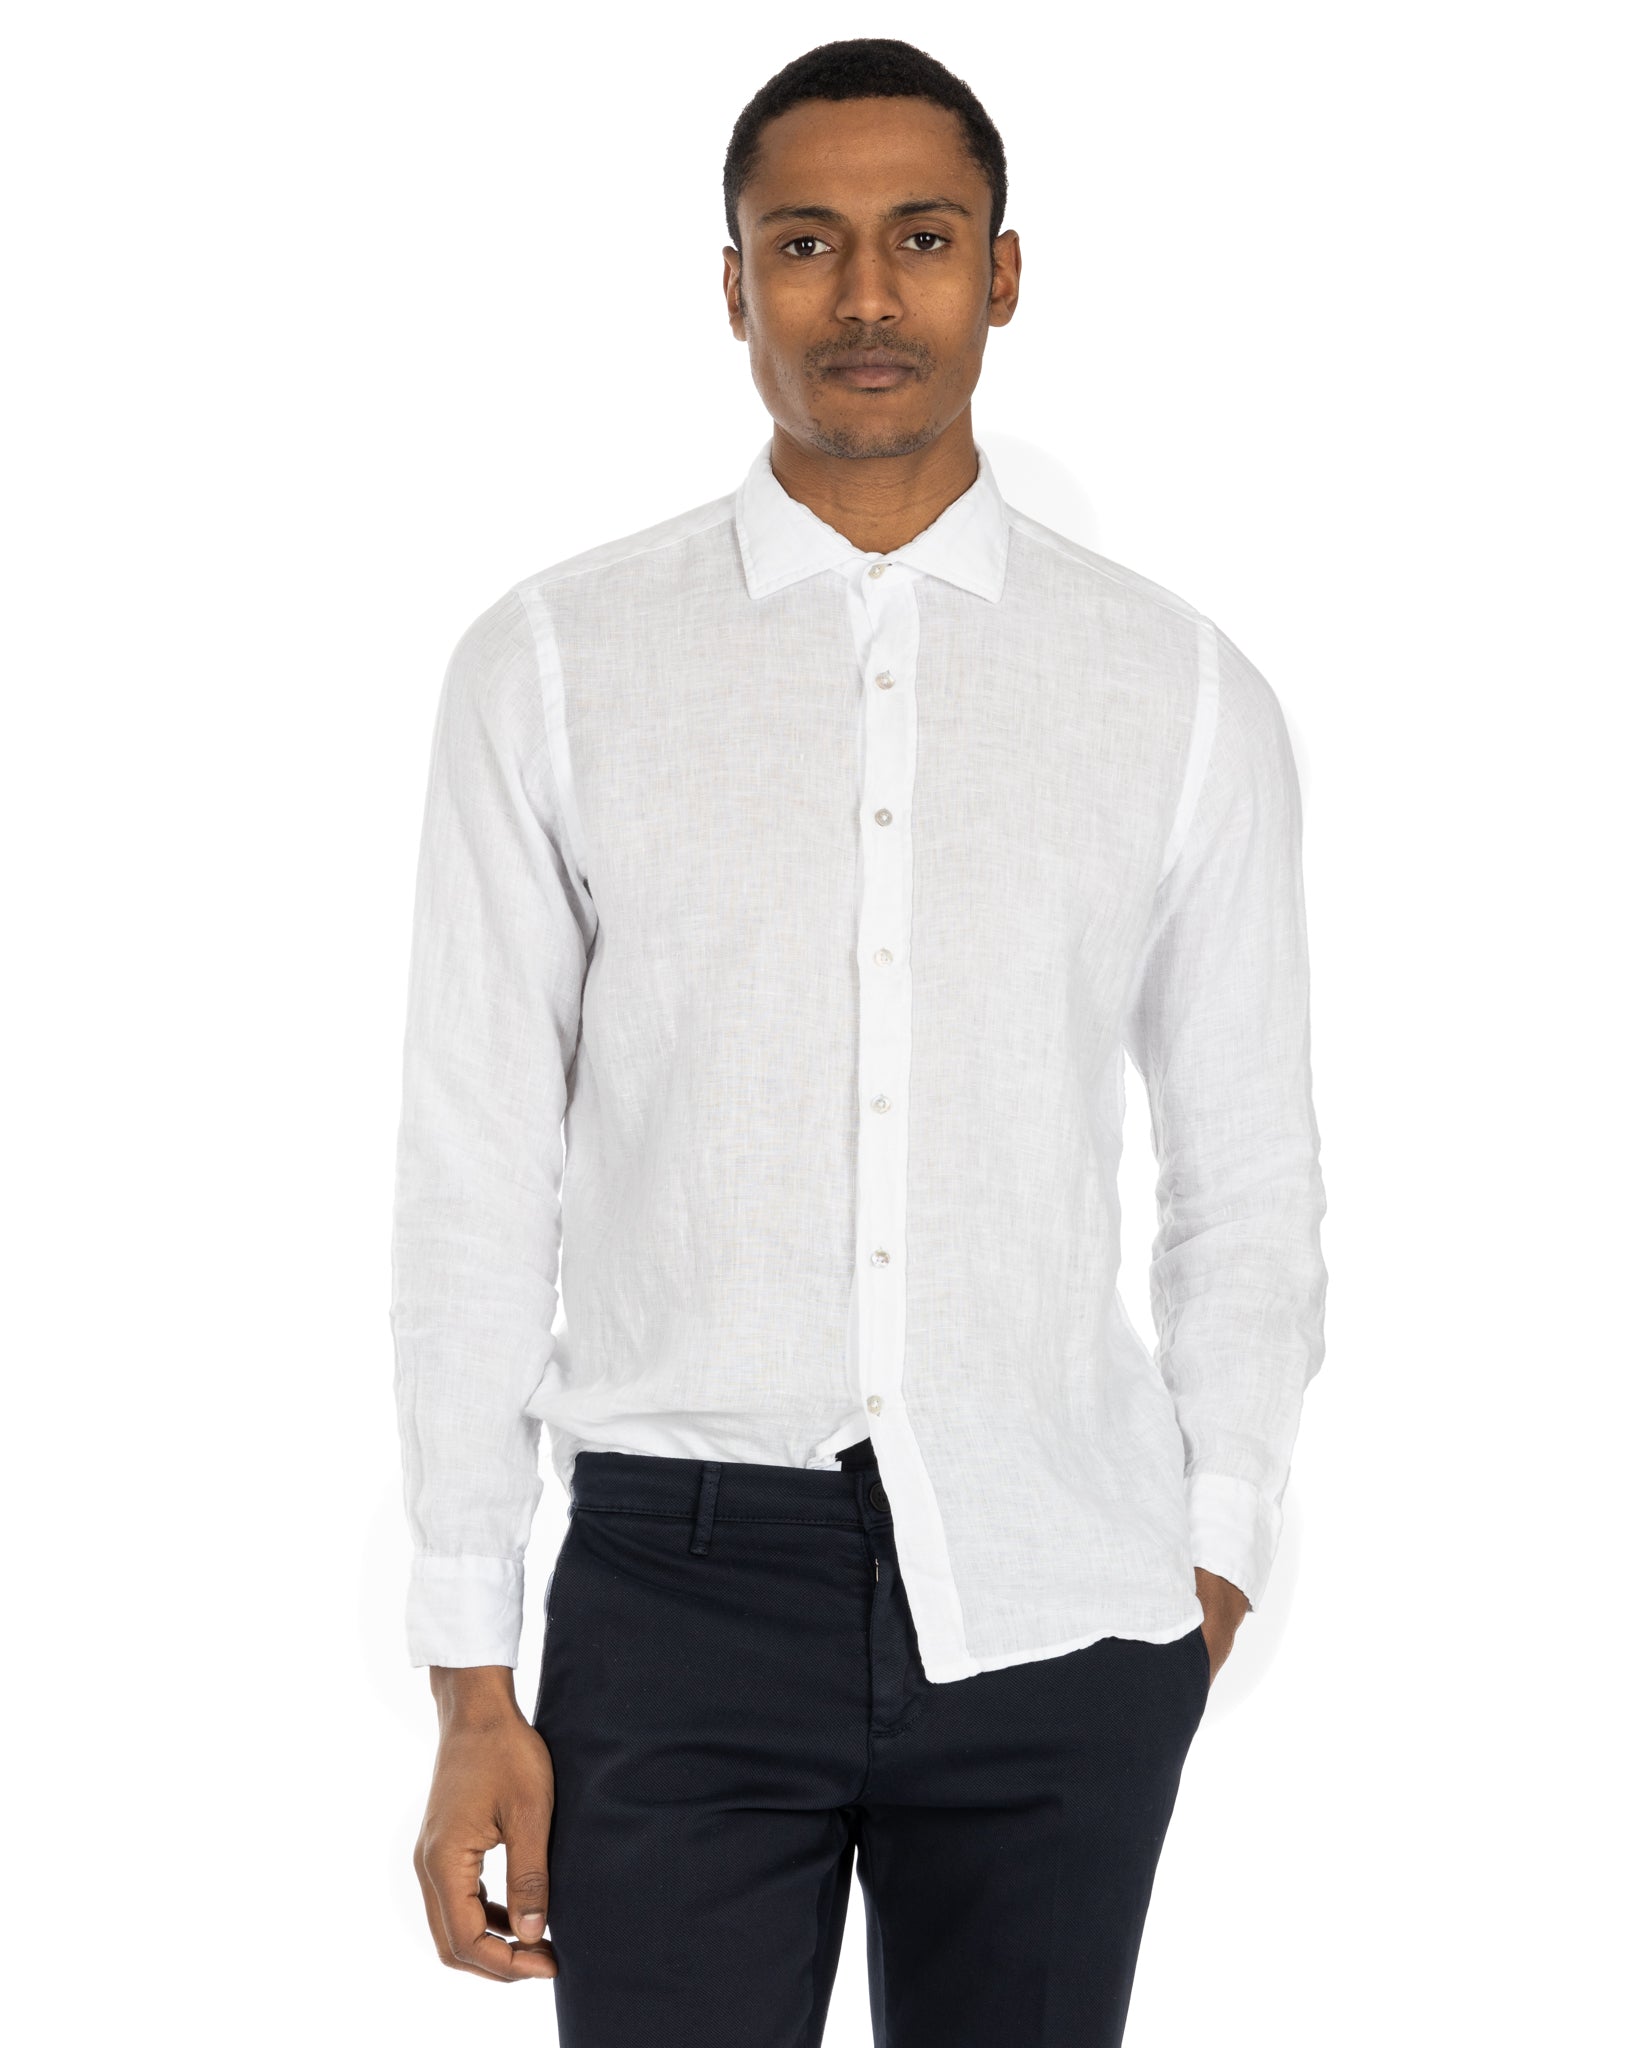 Montecarlo - pure white linen shirt